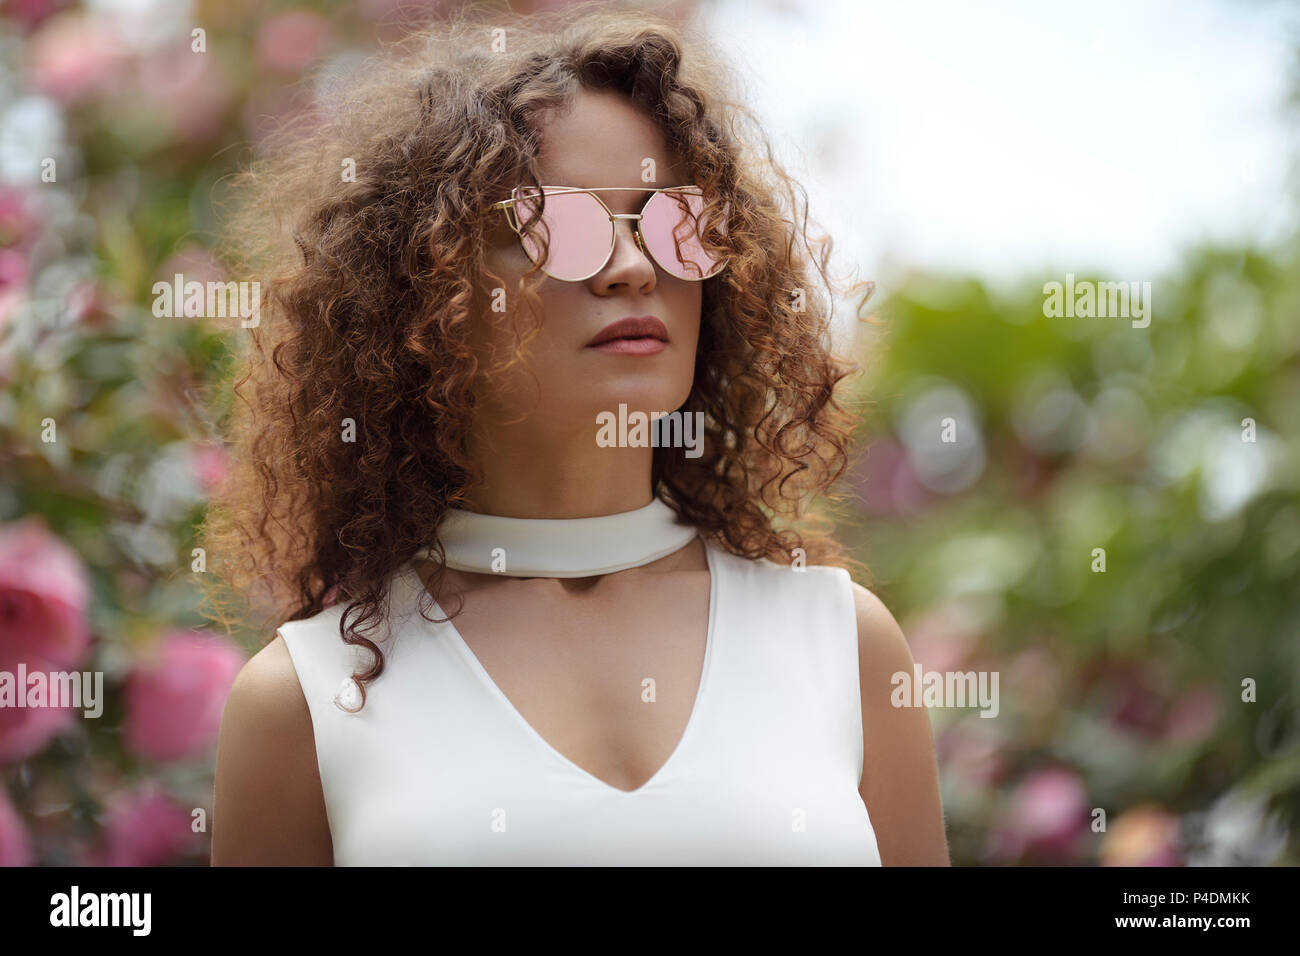 Mode Portrait einer schönen jungen stilvolle Frau mit Katze Auge geformt Spiegel Sonnenbrille und einem weißen v-ausschnitt offene Spaltung Top im Sommer sc Stockfoto